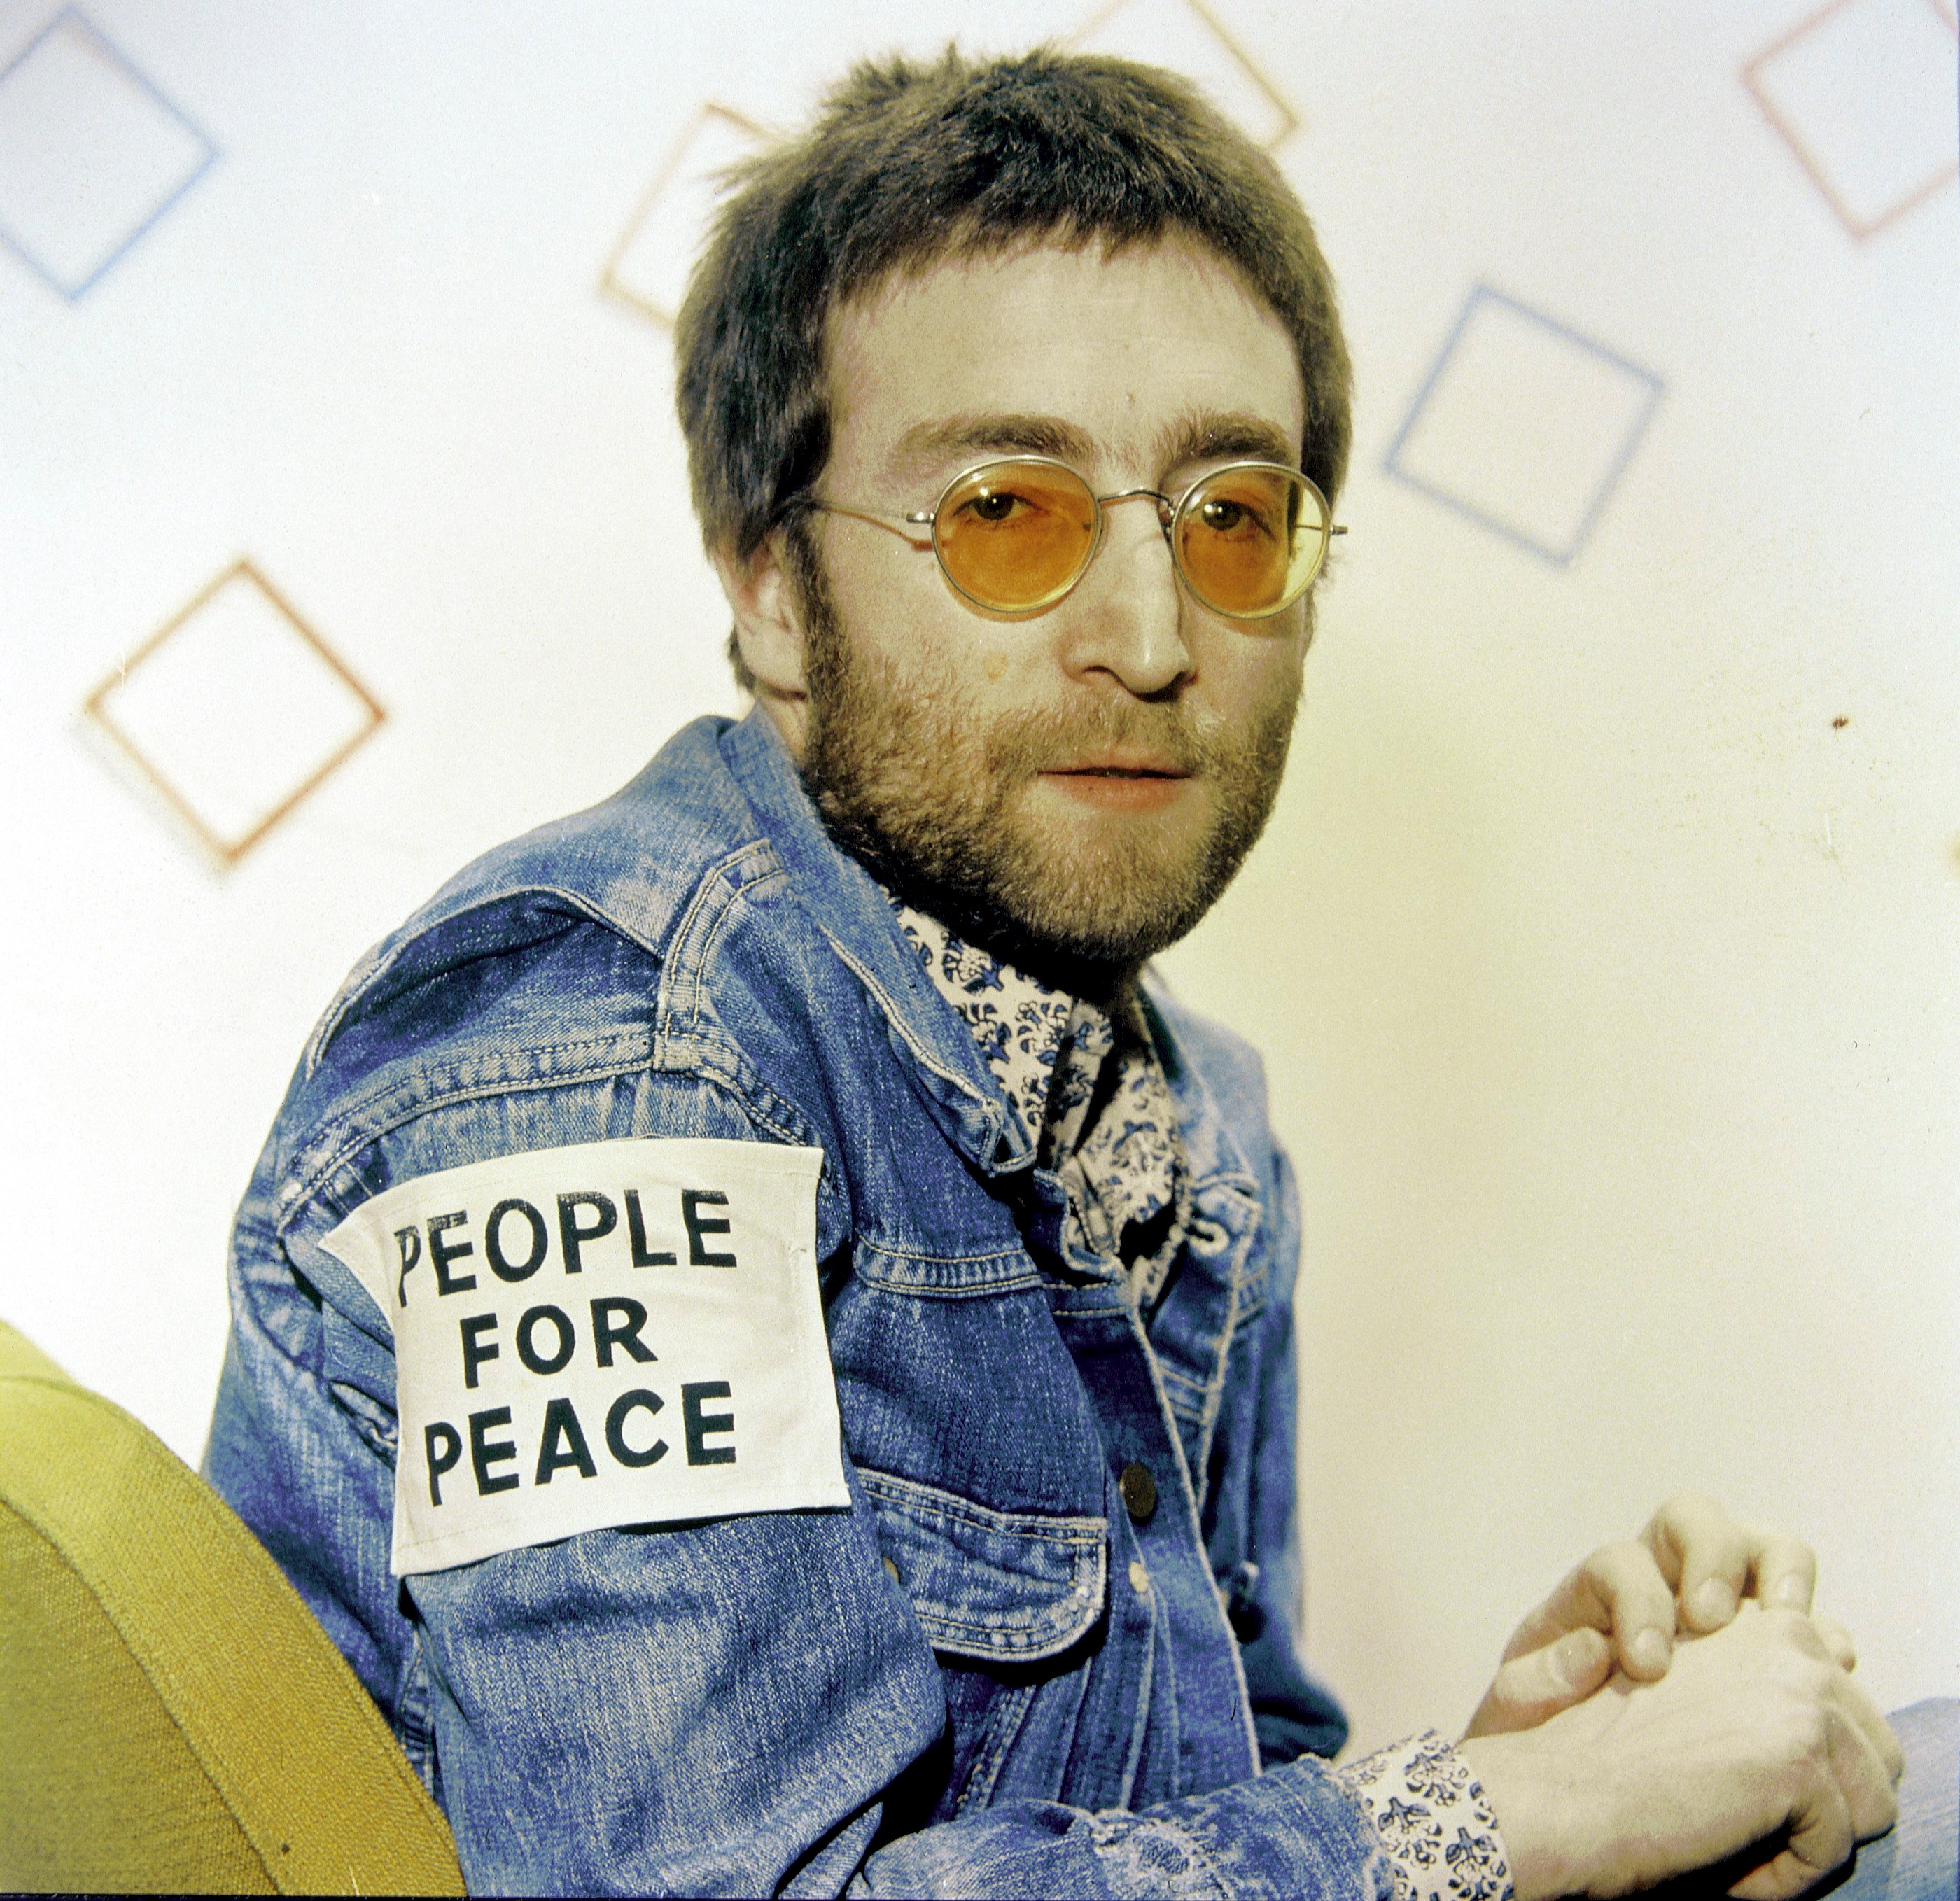 The Beatles' John Lennon wearing a jean jacket